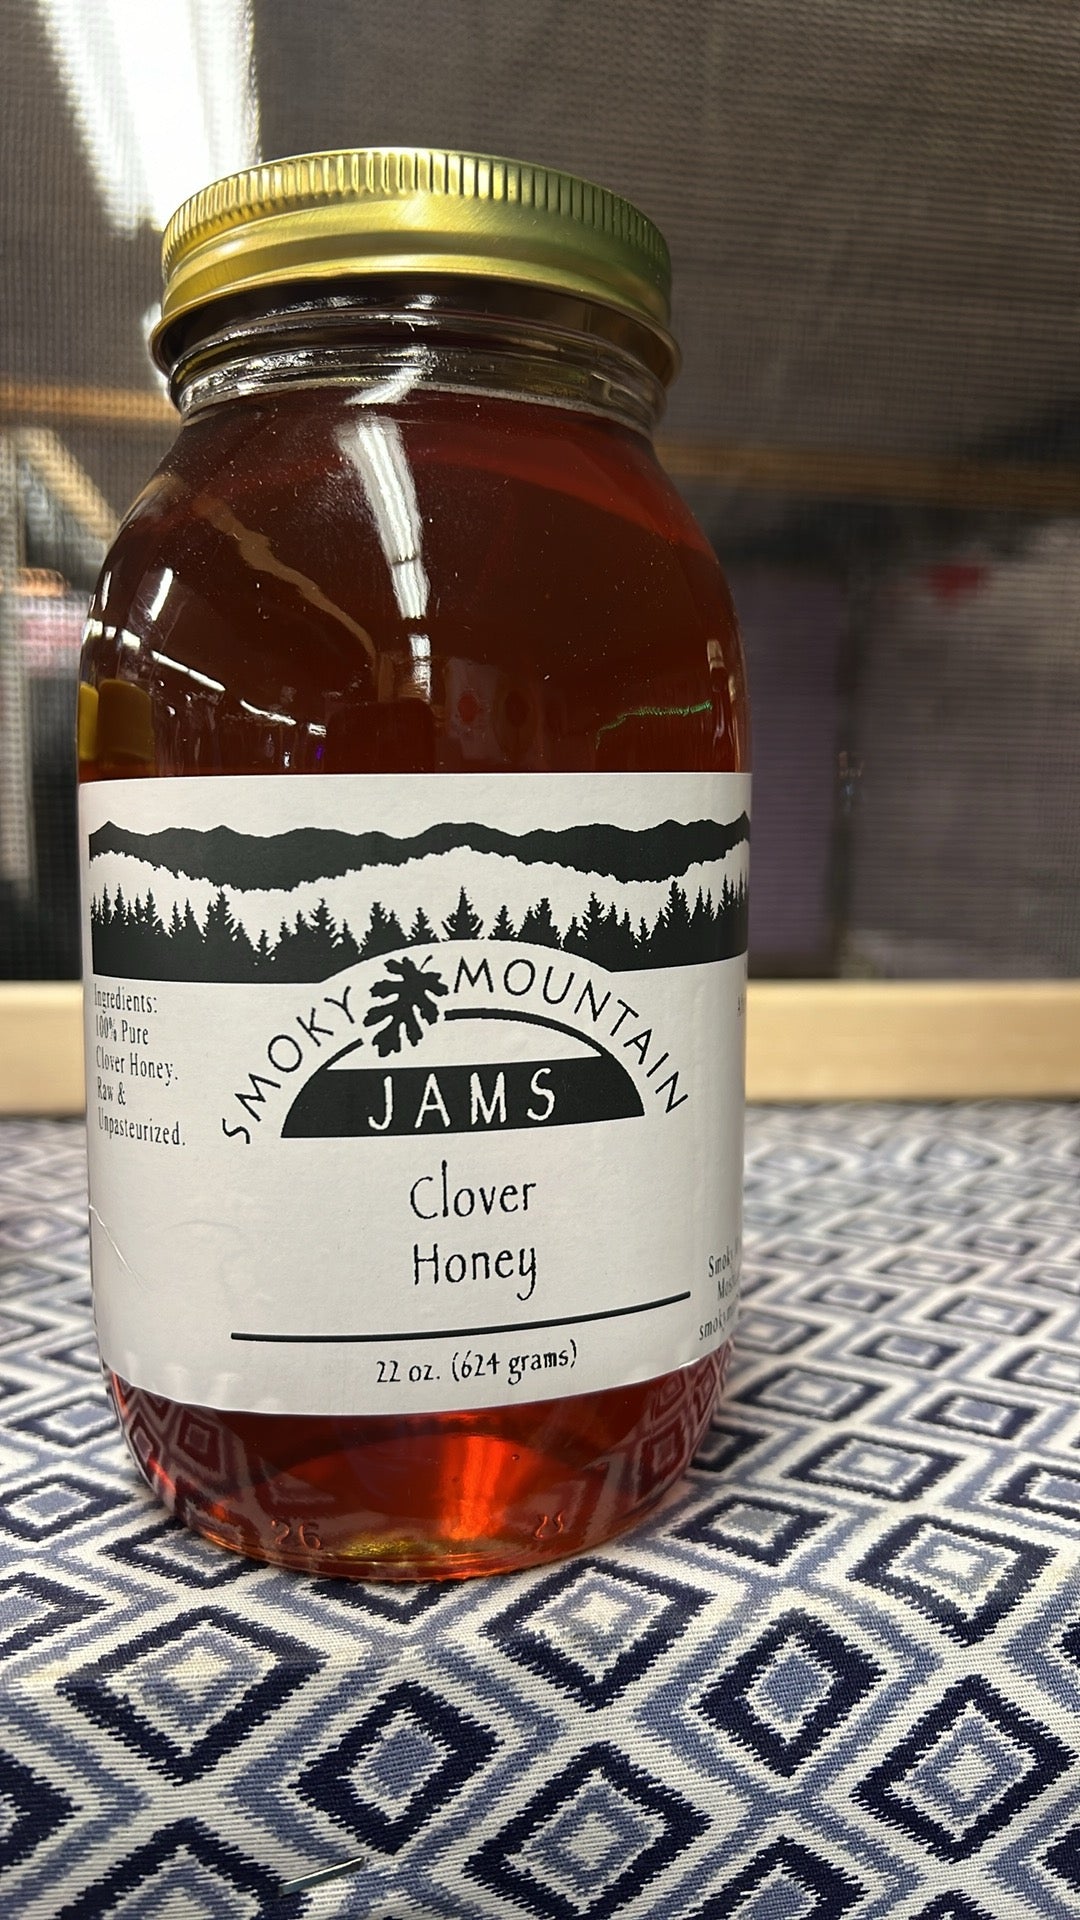 Smoky Mountain clover honey